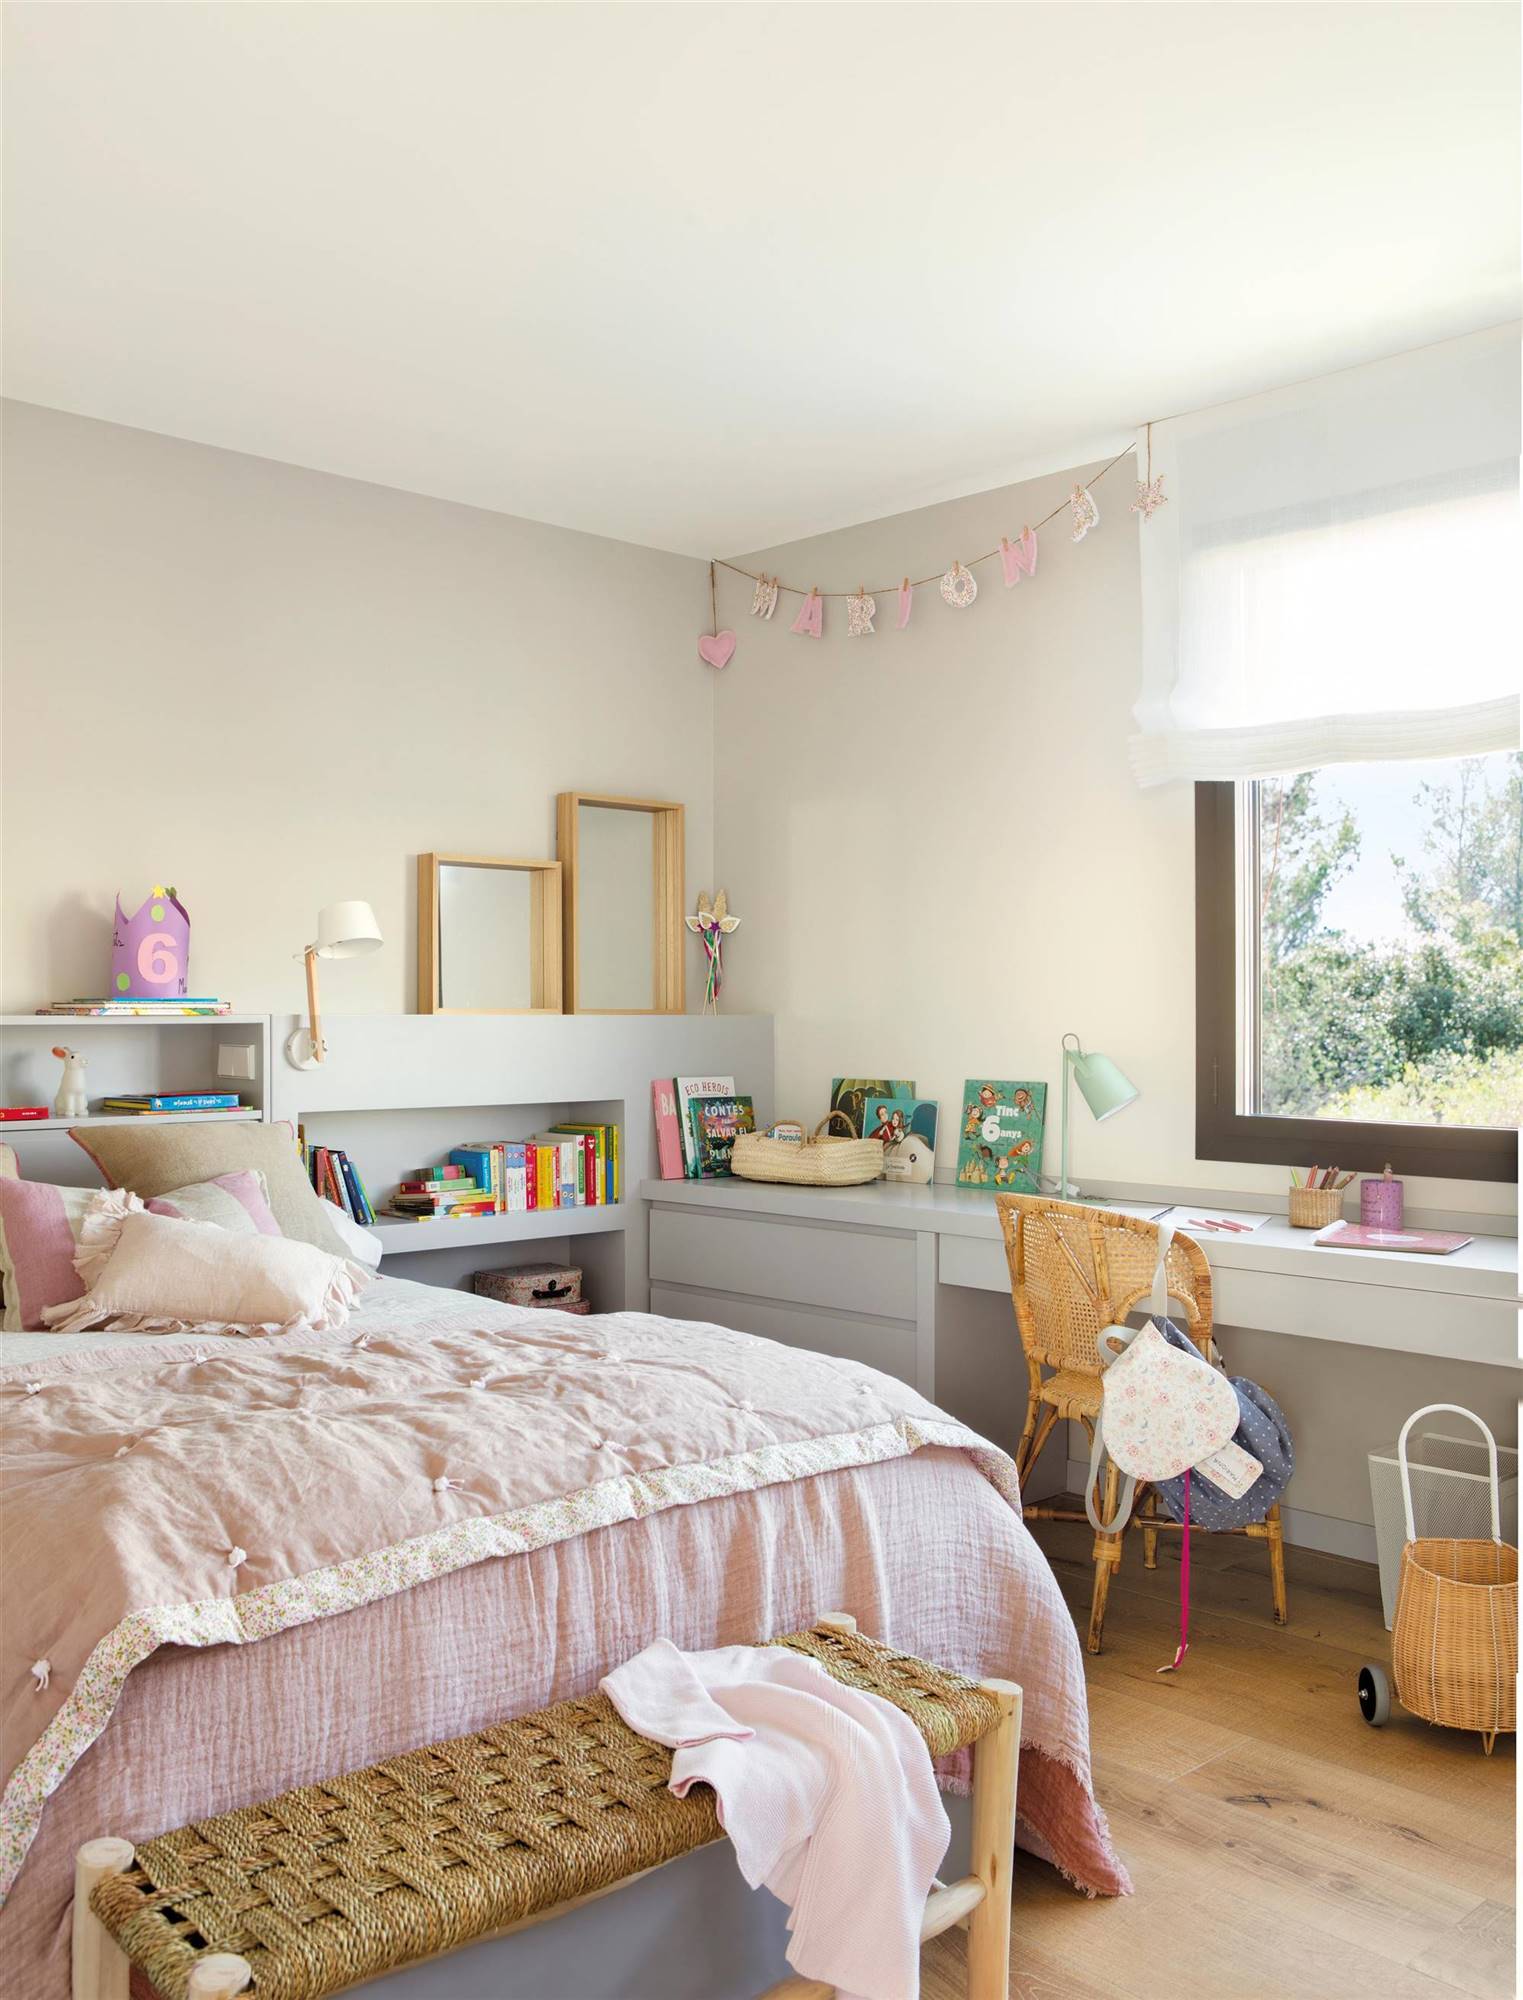 00535680 Dormitorio infantil con escritorio en paralelo a la cama